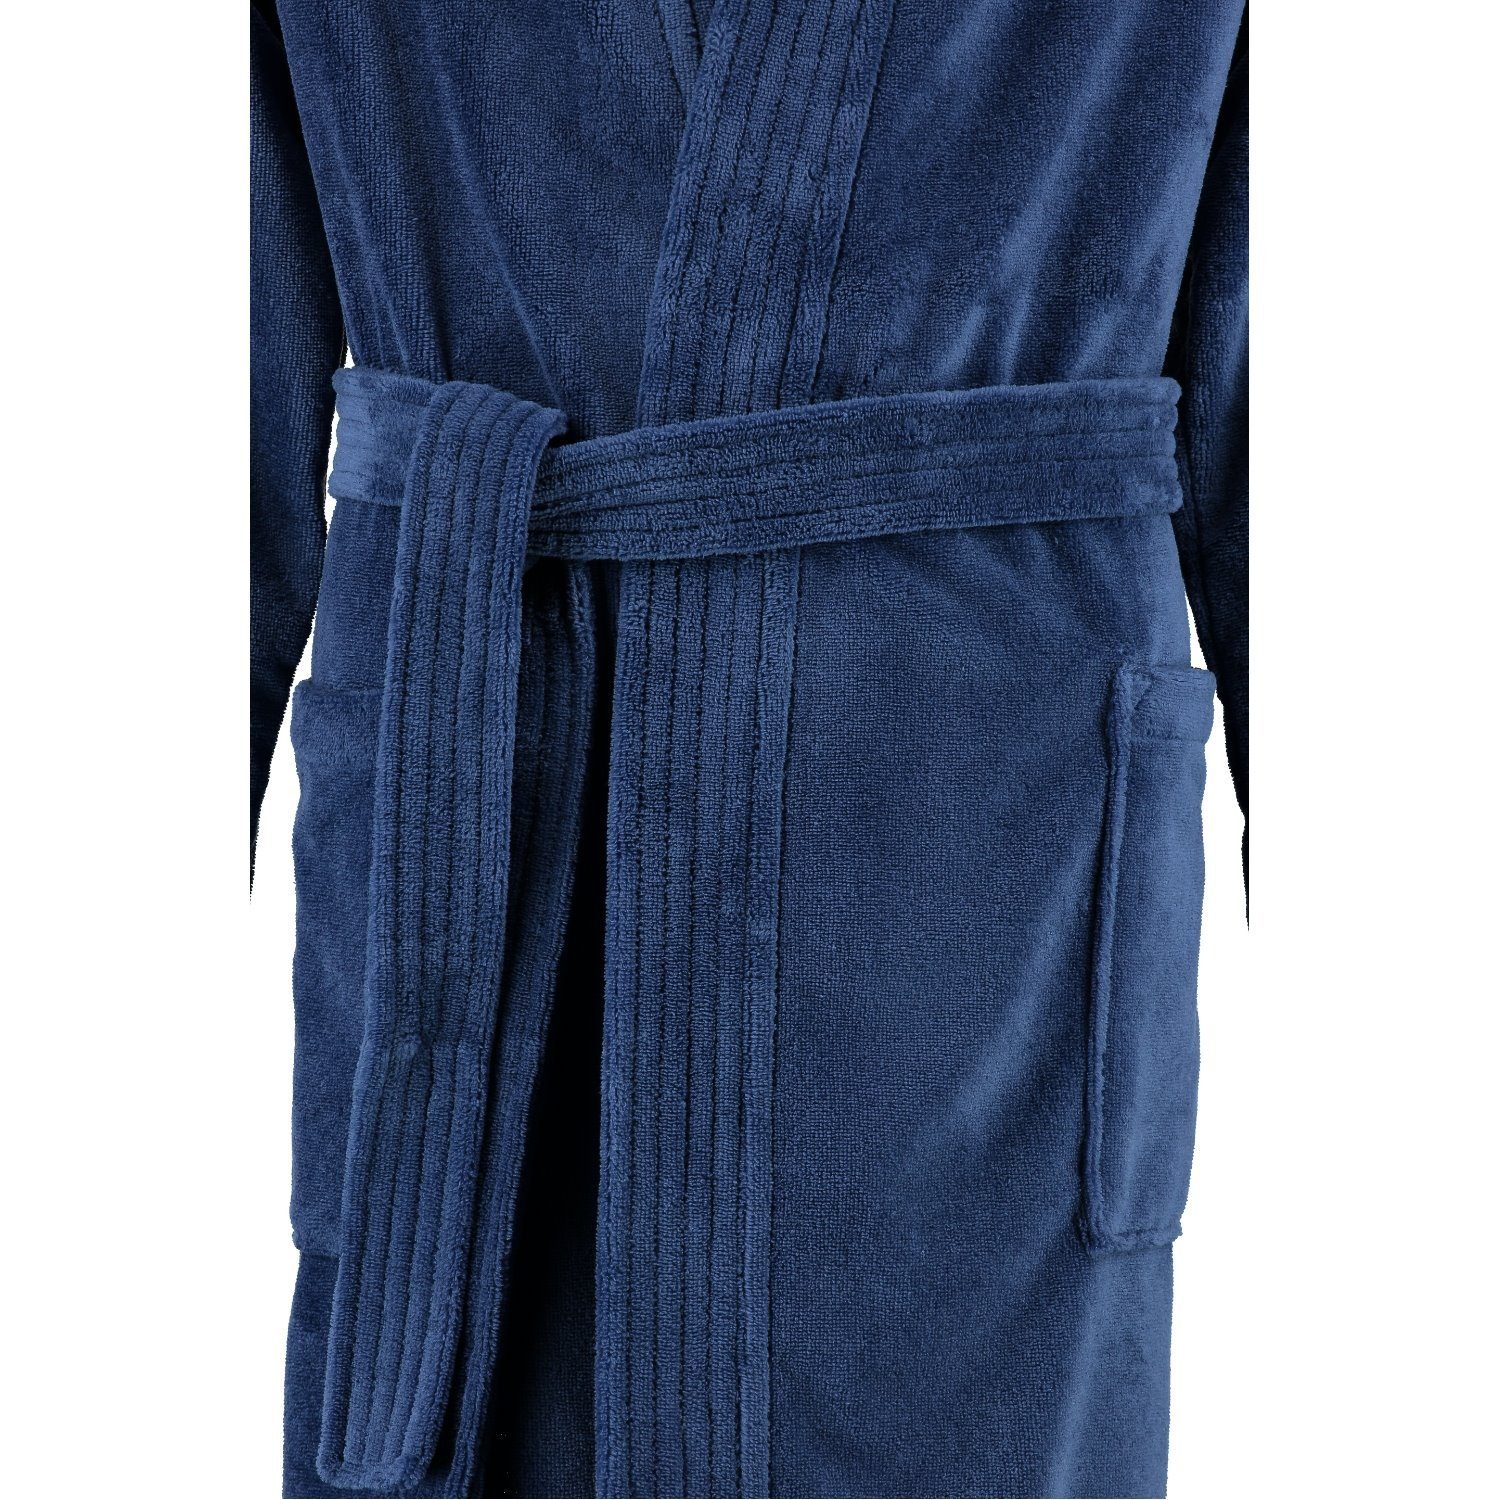 Gürtel, Velours Home Cawö Kimono-Kragen, Herren Baumwollmischung, Cawö Qualität Kimonoform, Bademantel Herrenbademantel nachtblau